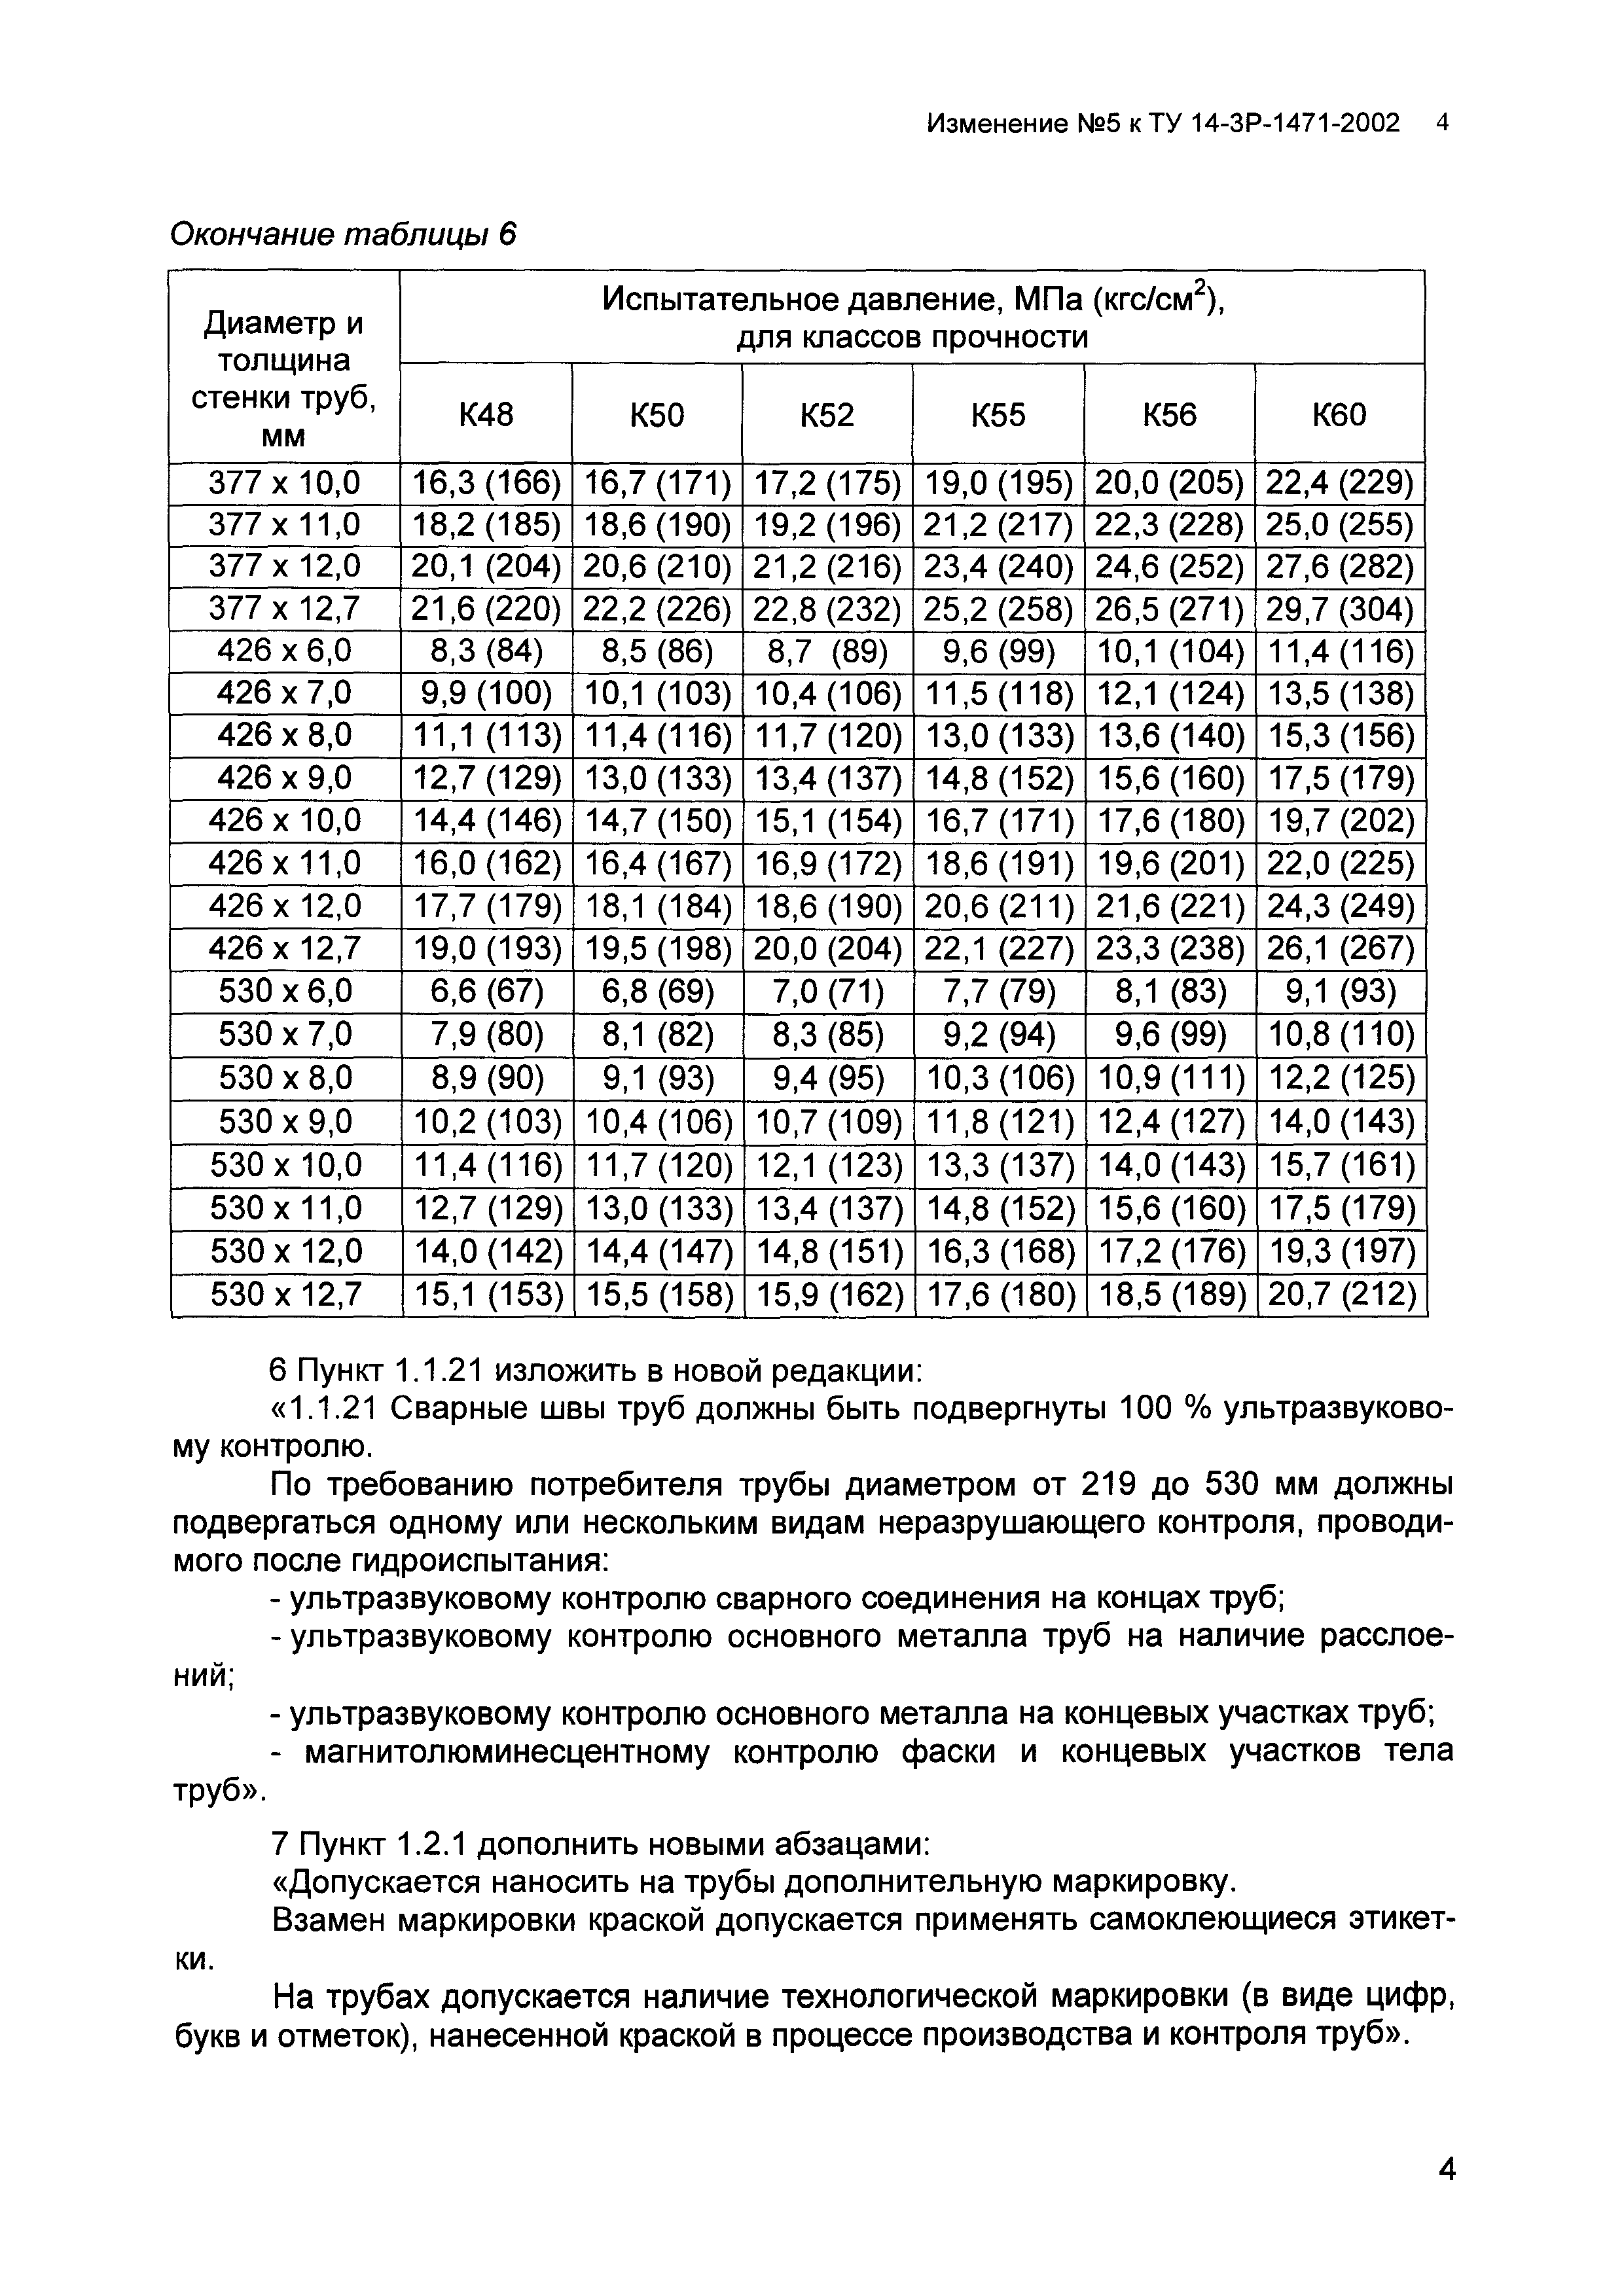 ТУ 14-3Р-1471-2002